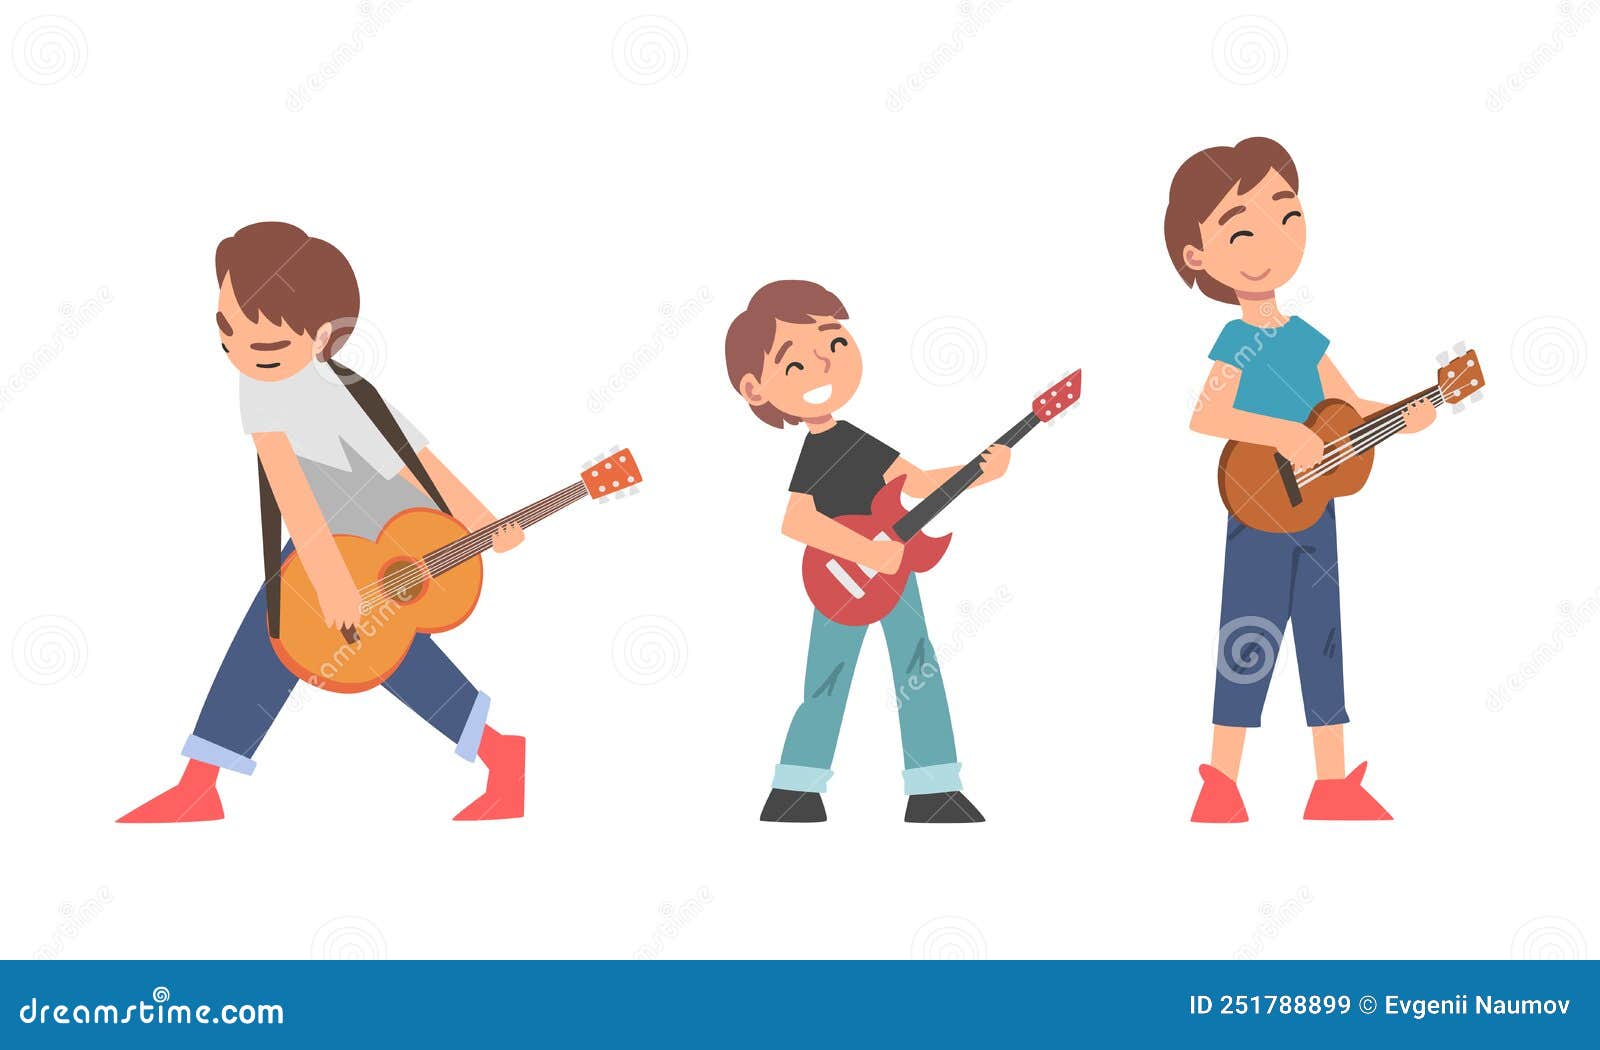 男孩弹吉他 一个快乐的男孩弹吉他的矢量插图。 库存矢量图（免版税）311450129 | Shutterstock